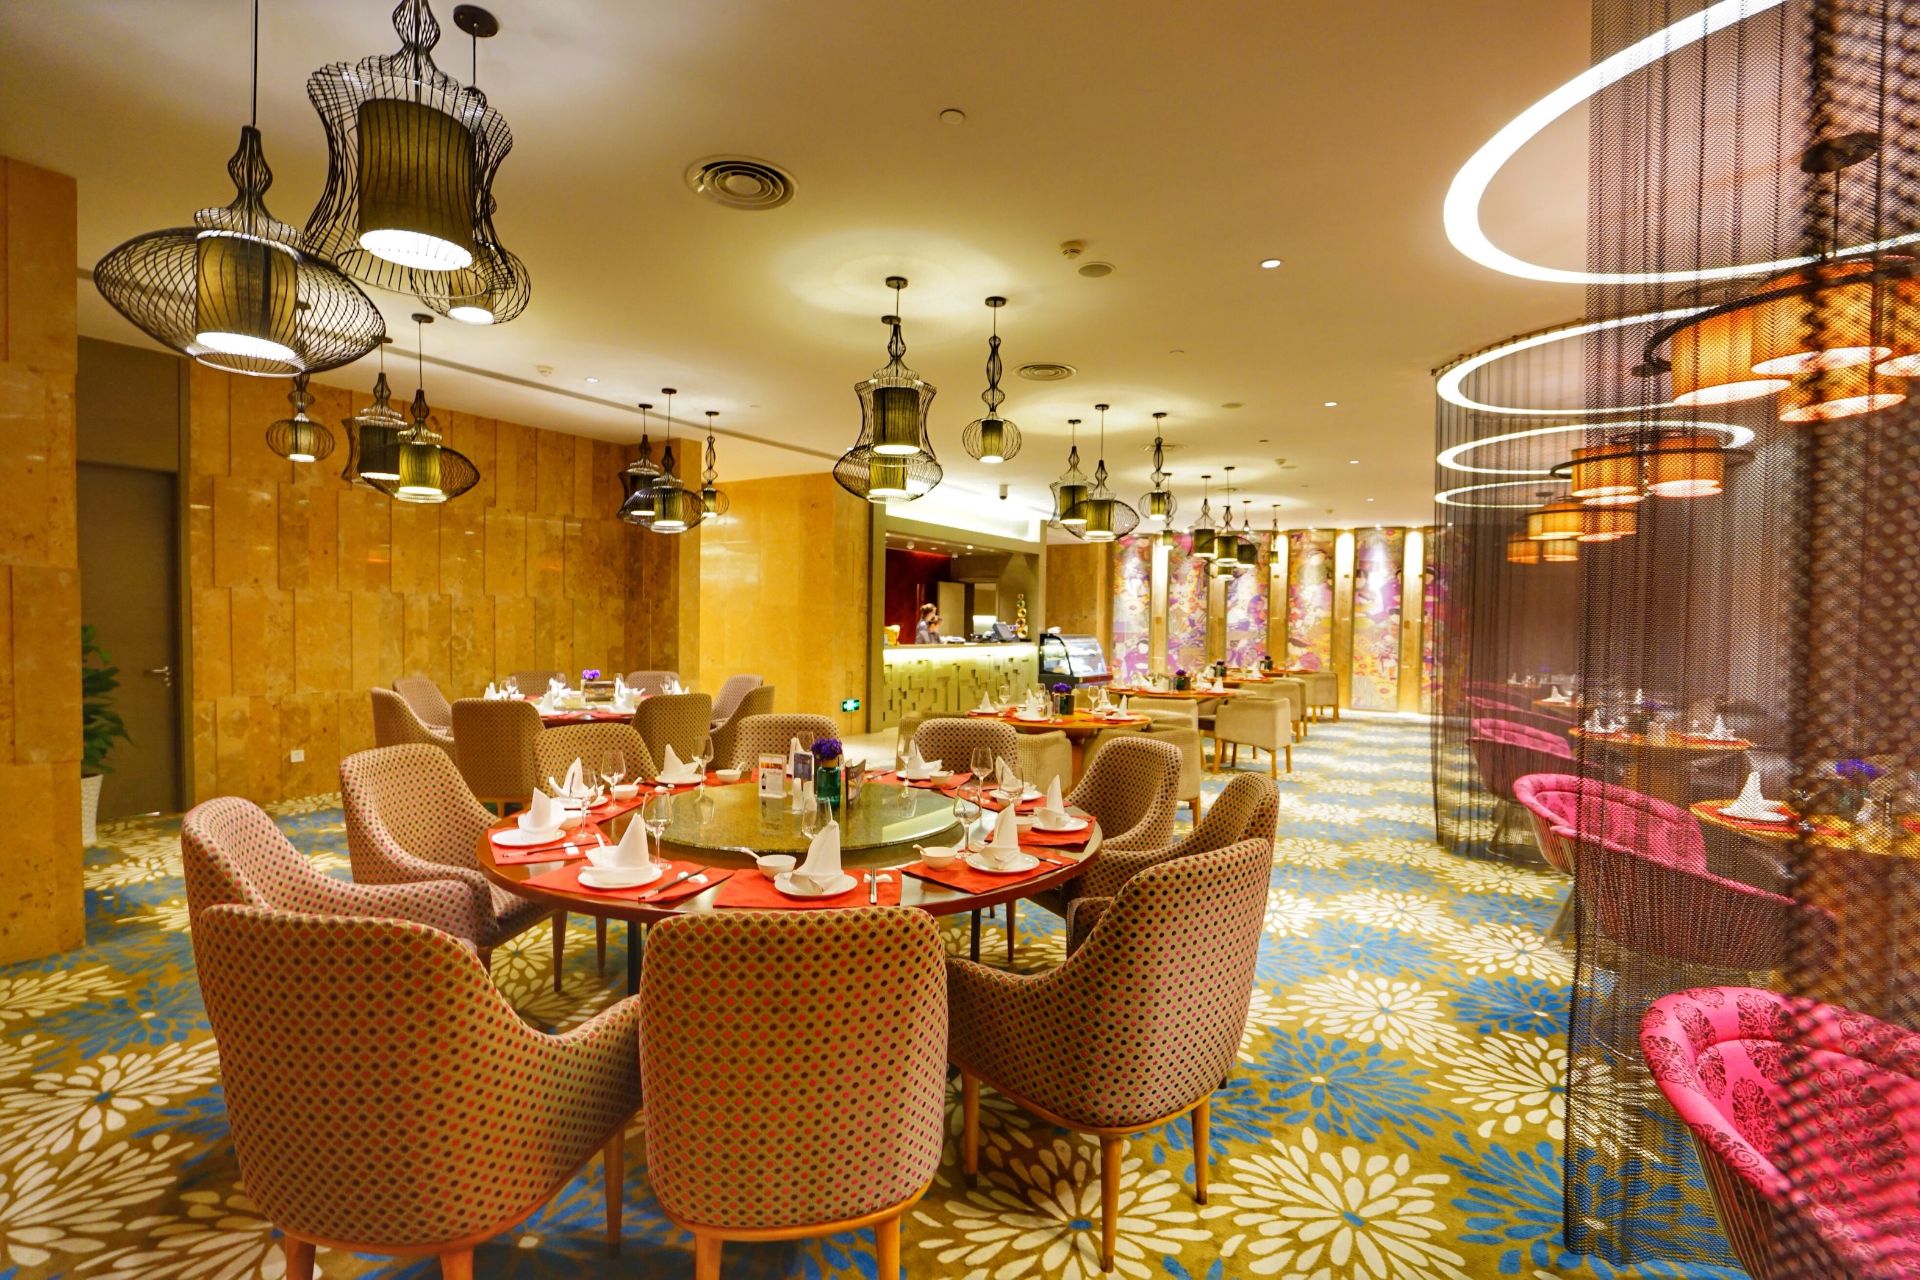 南京禄口机场铂尔曼大酒店二楼的紫金中餐厅,环境优雅精致,舒适温馨